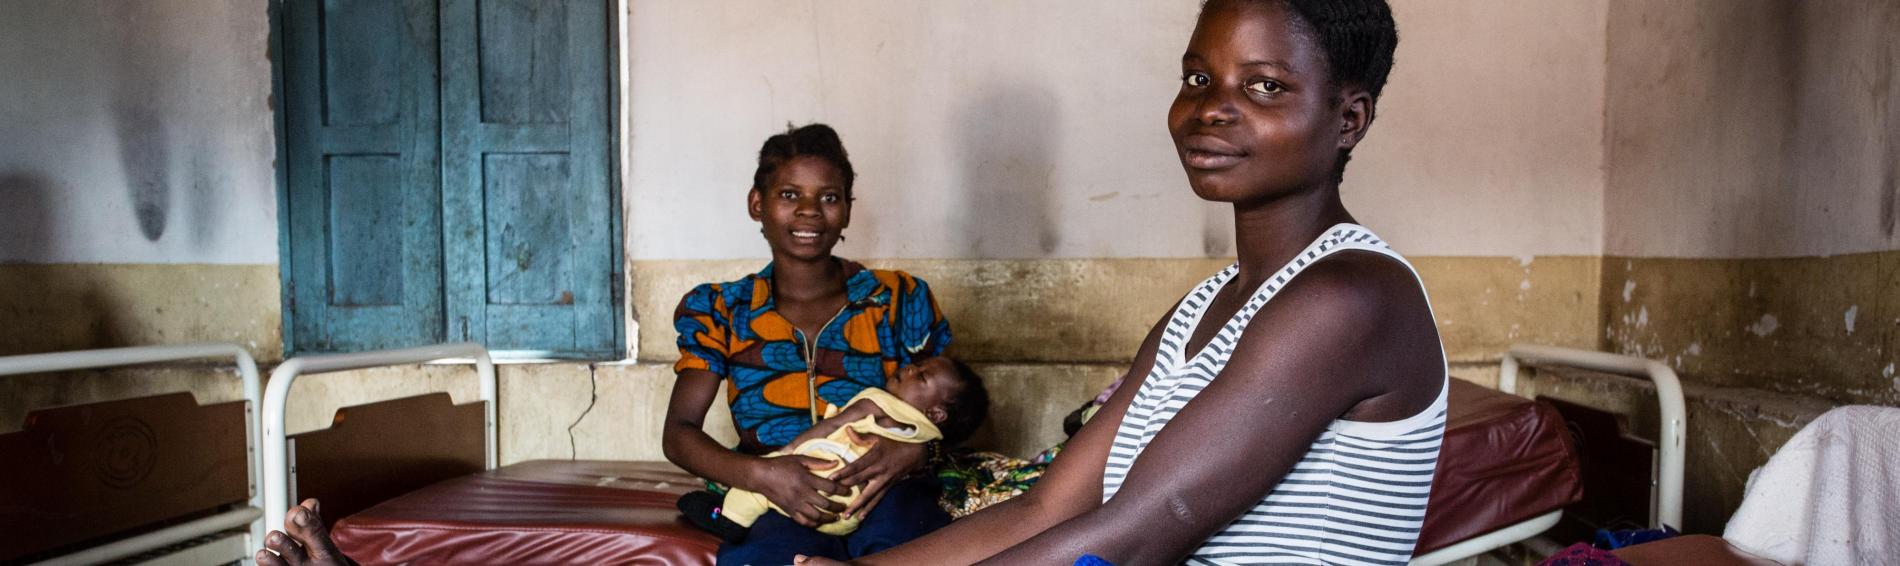 Twee Congolese vrouwen in kleurrijke jurken zitten op ziekenhuisbedden, hun zuigelingen in de arm.